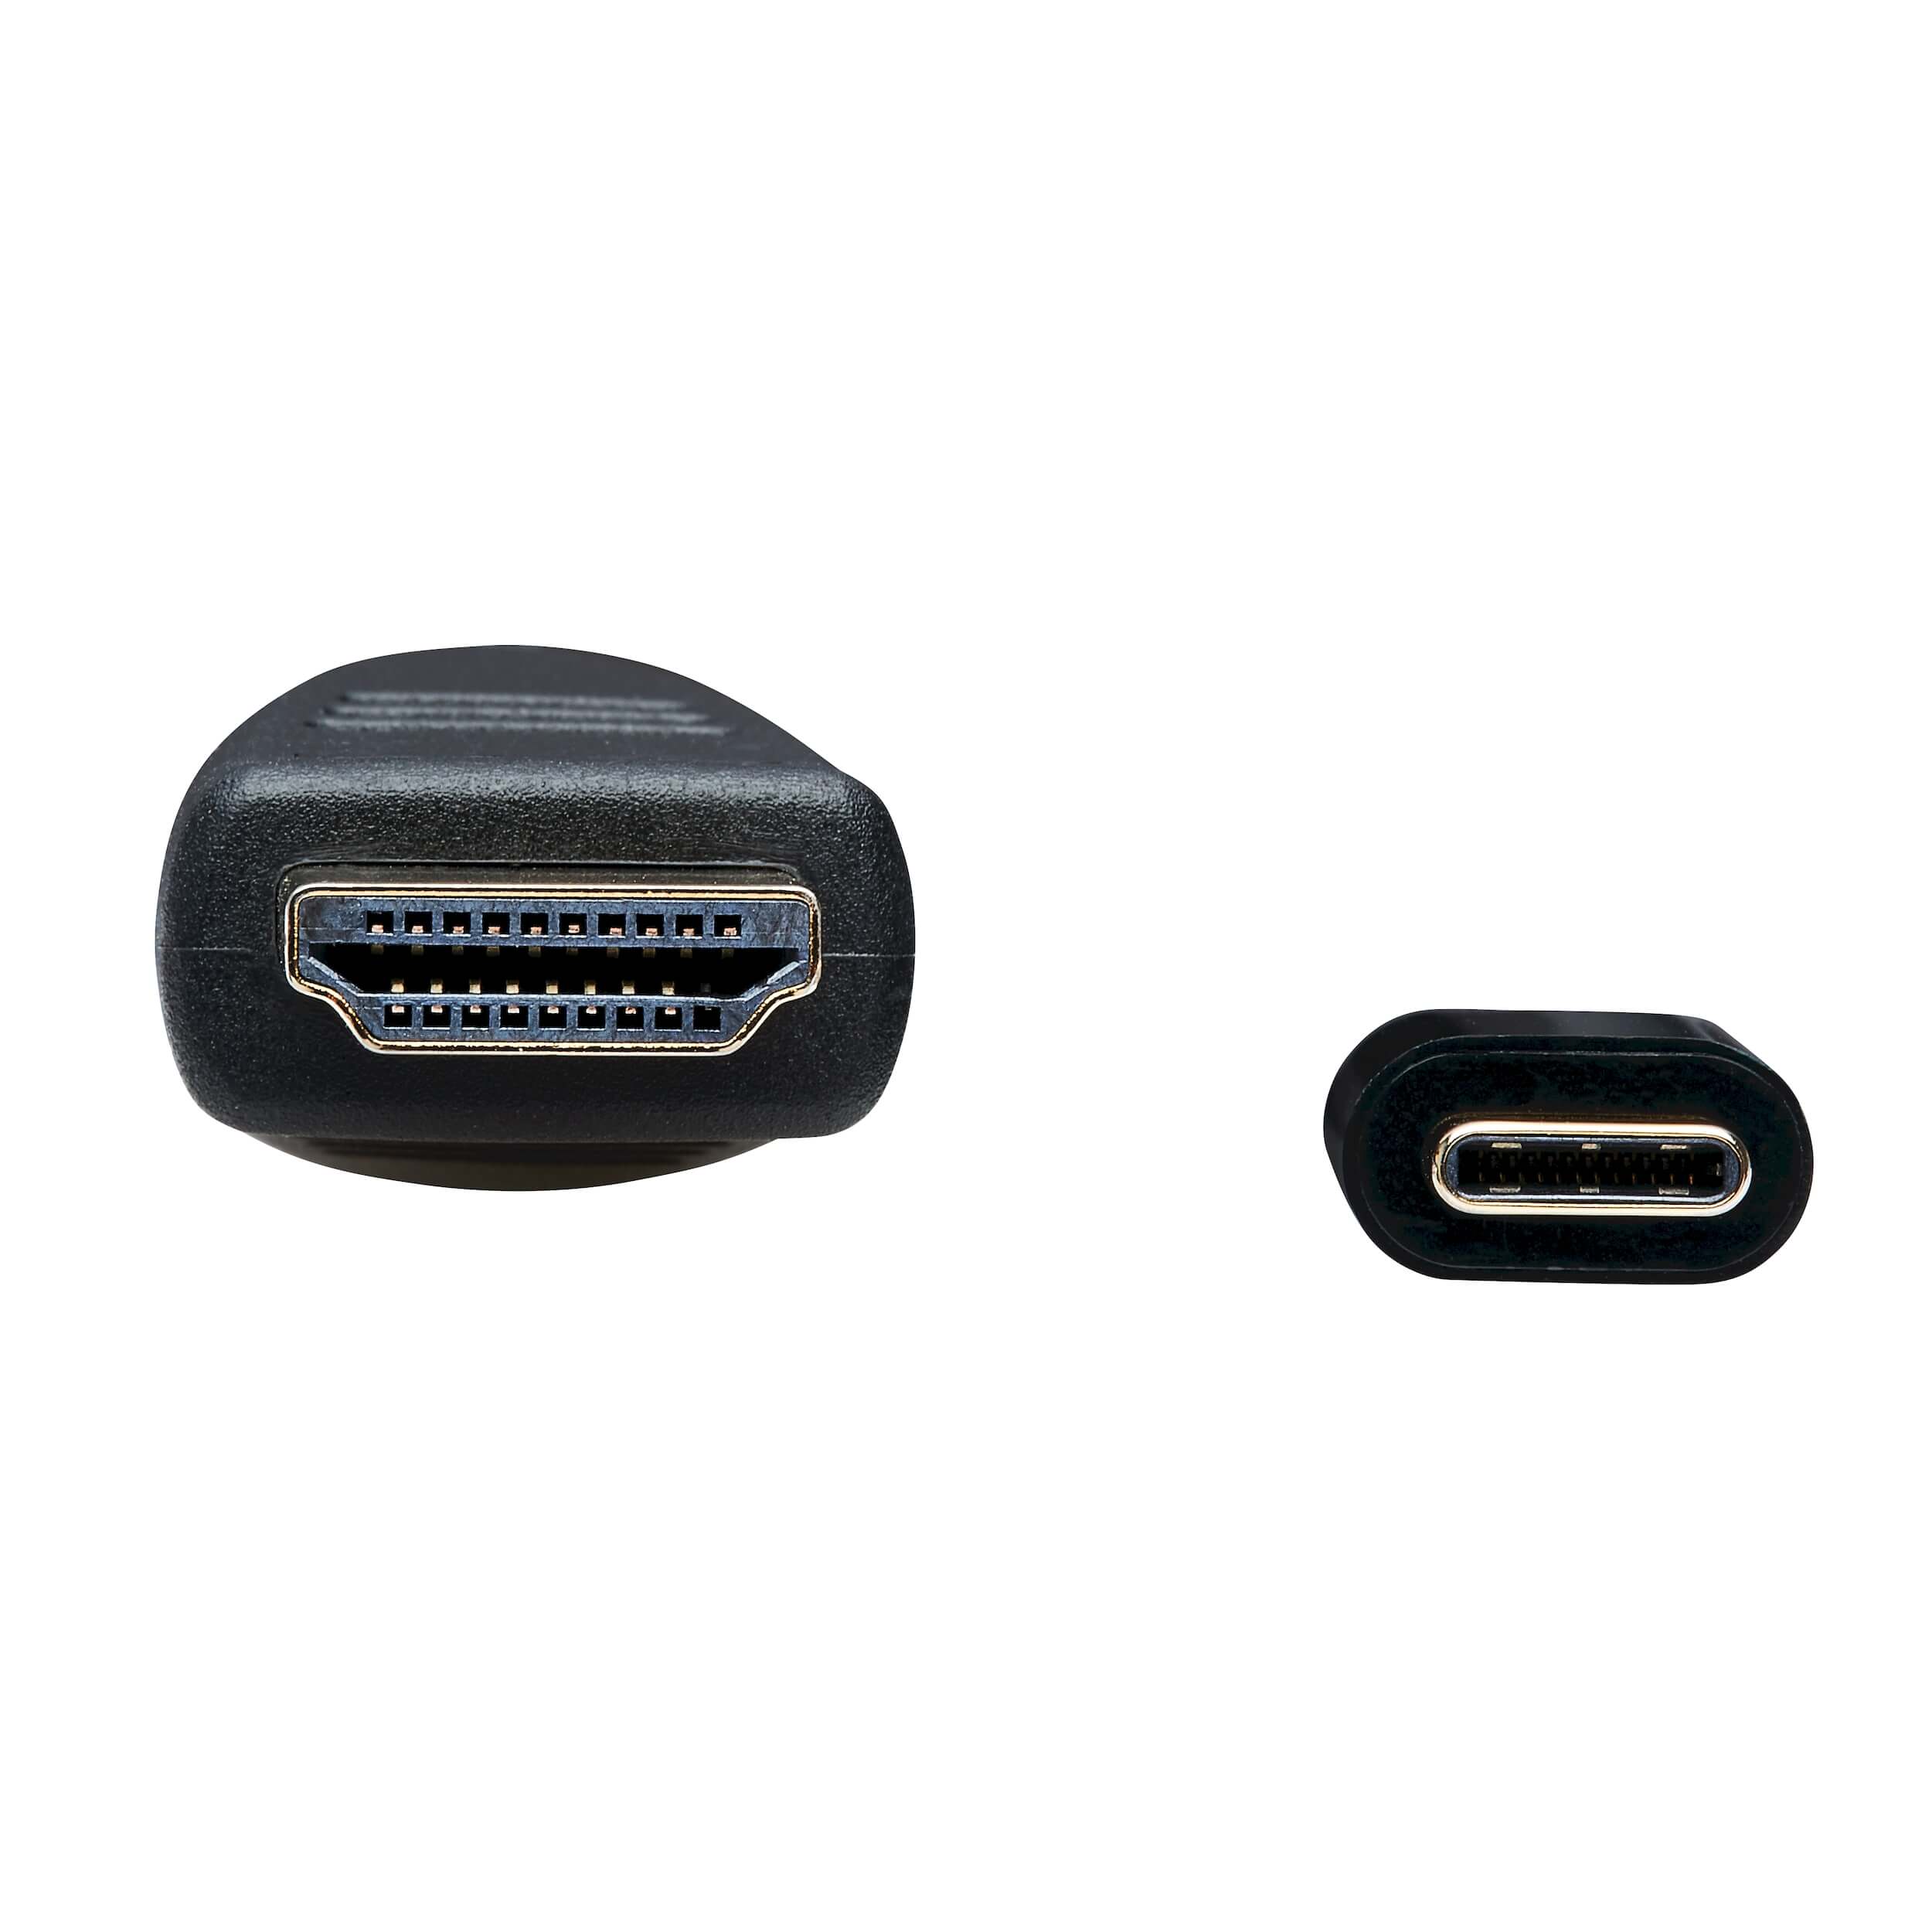 Tripplite Adaptér USB-C/ HDMI (Samec/ Samec), 4K 60Hz, 4:4:4, HDCP 2.2, čierna, 1.8m 